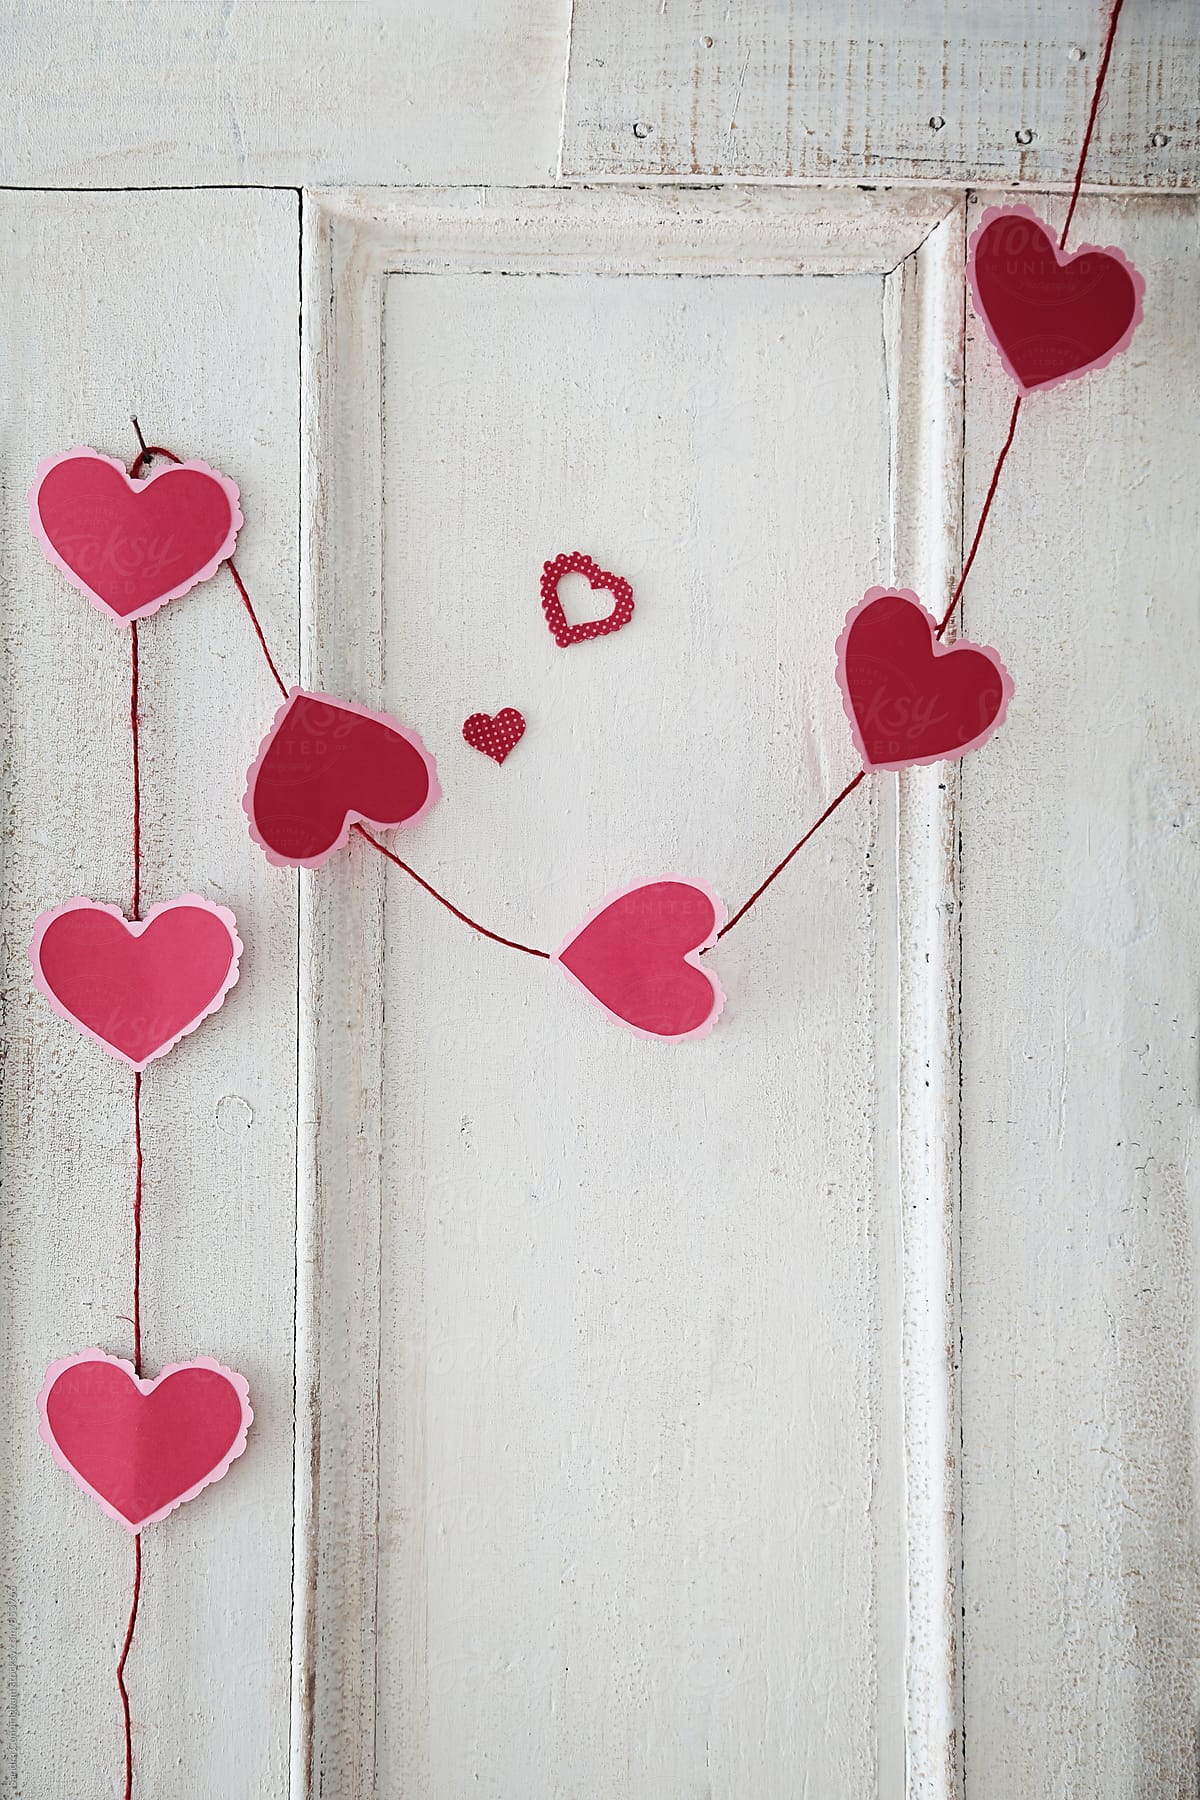 Garland of paper hearts on old door